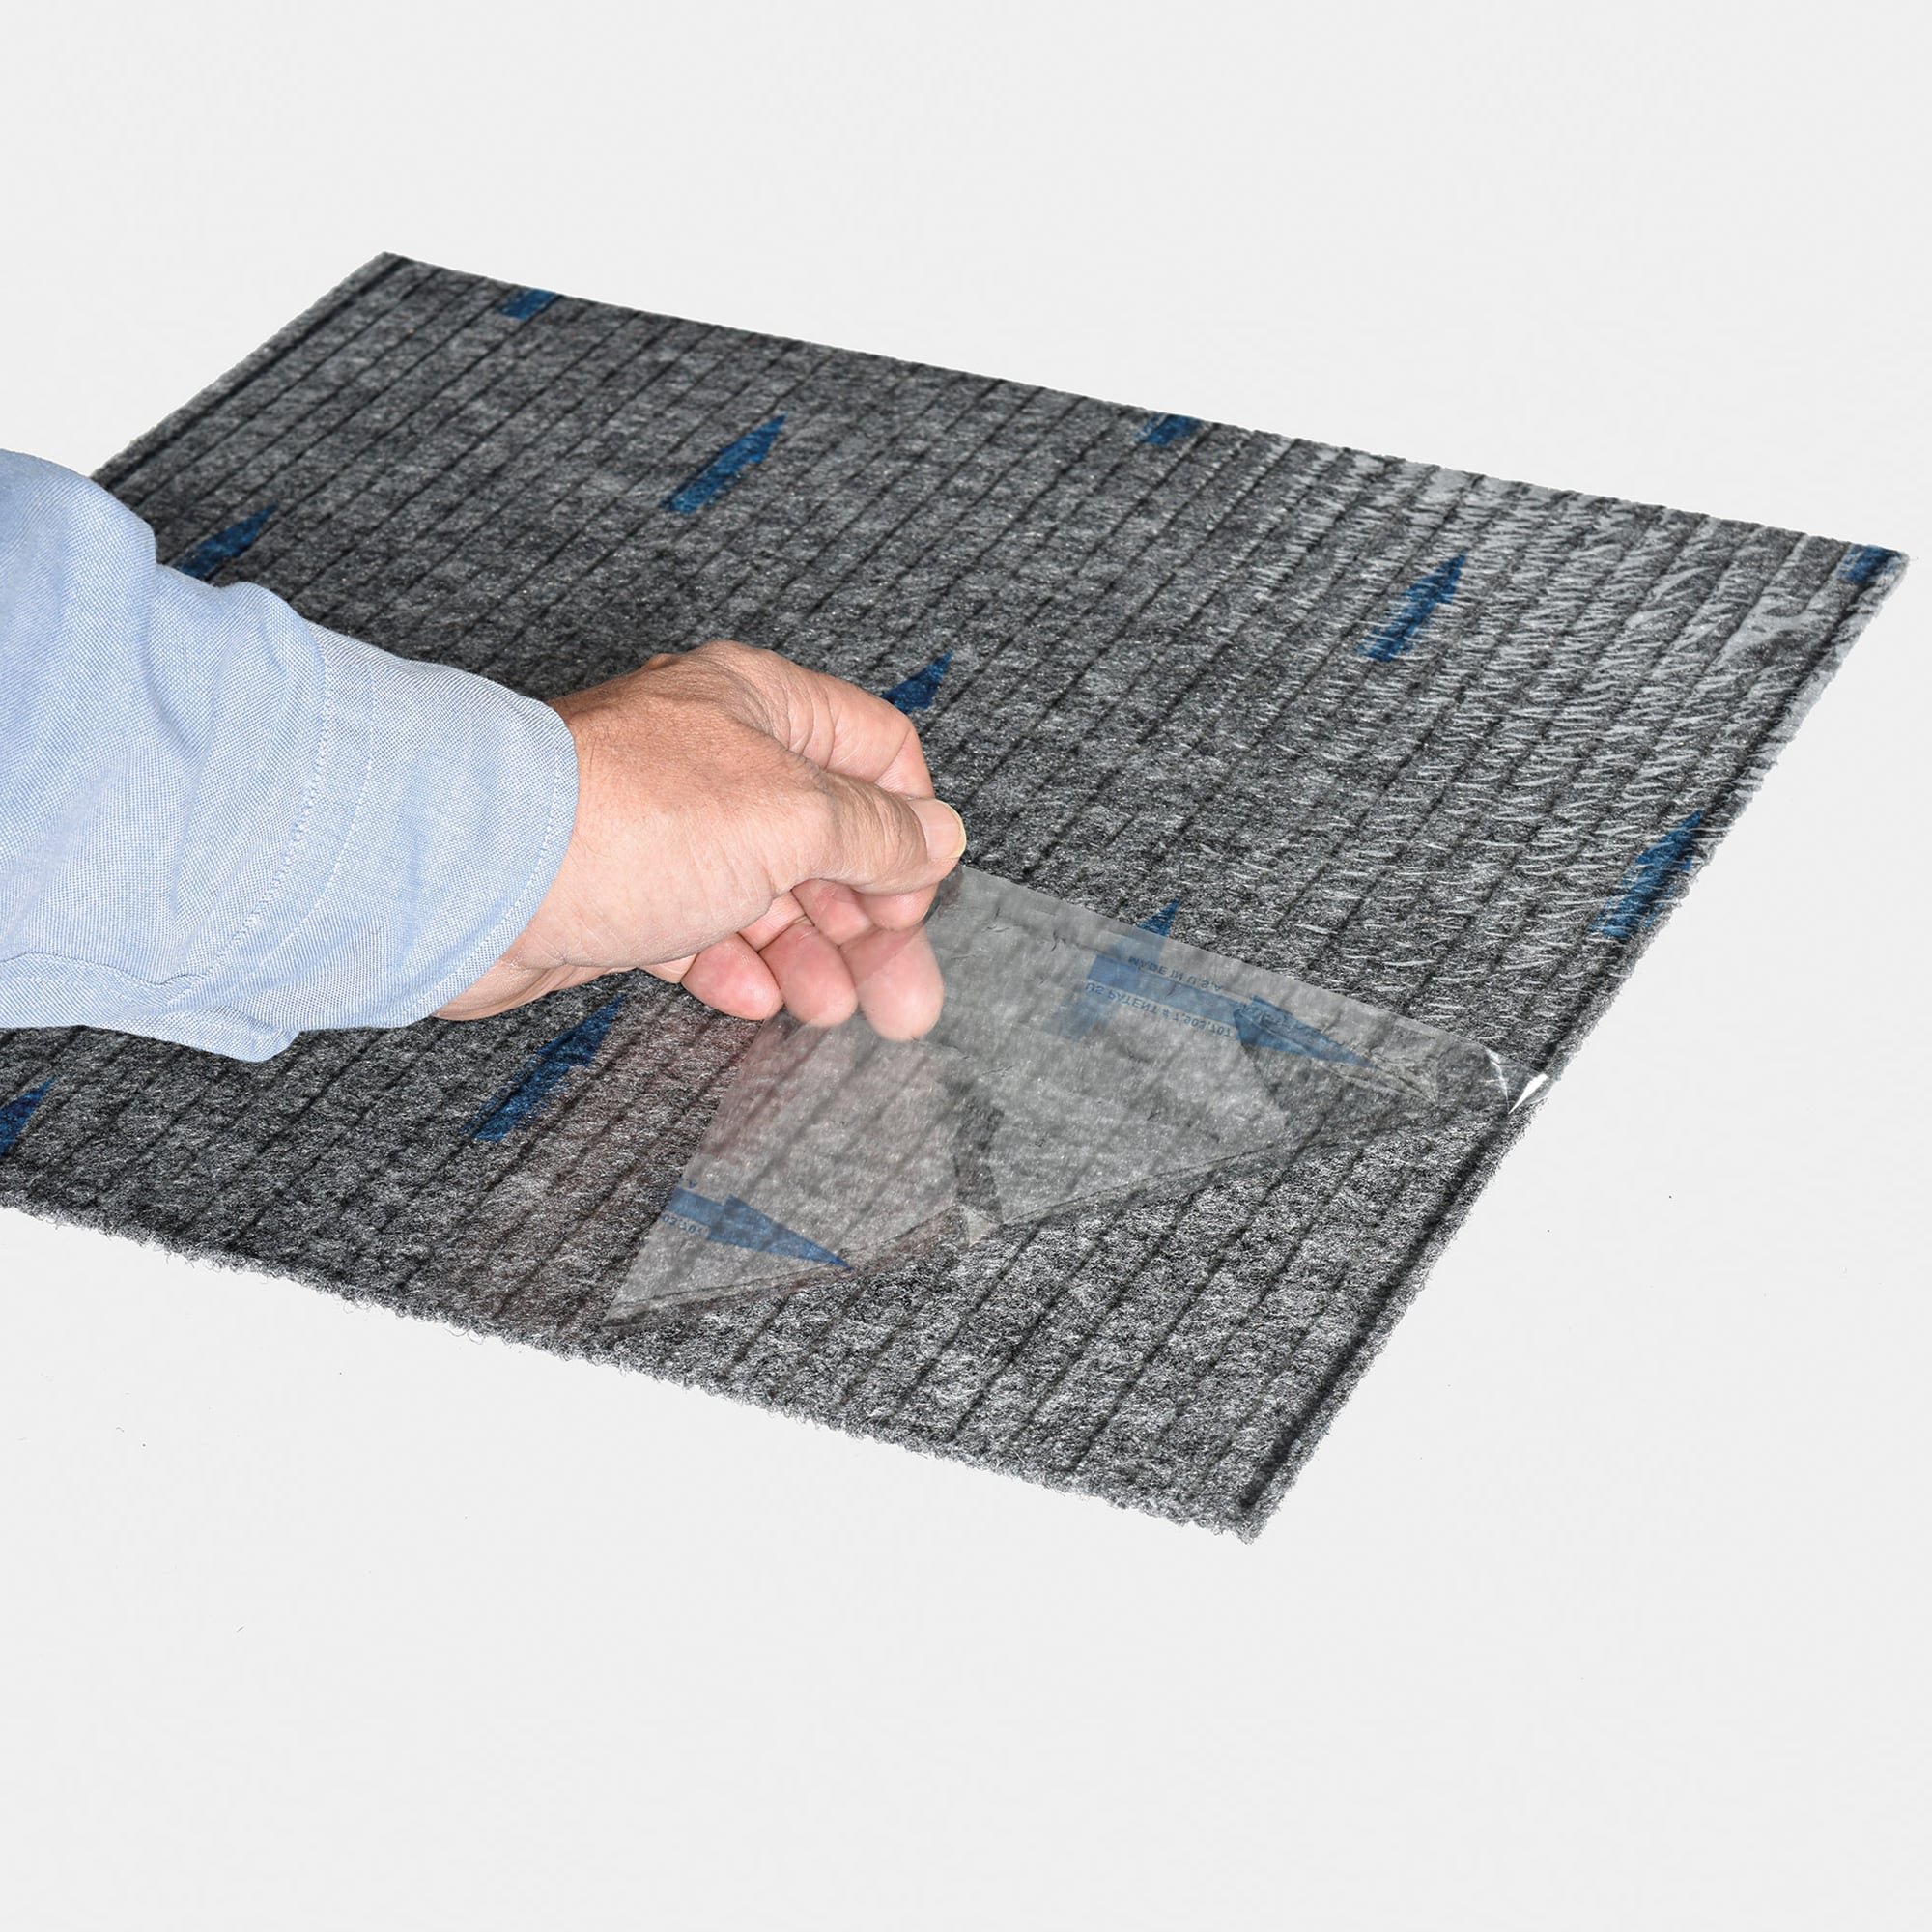 Waterproof Carpet & Carpet Tile at